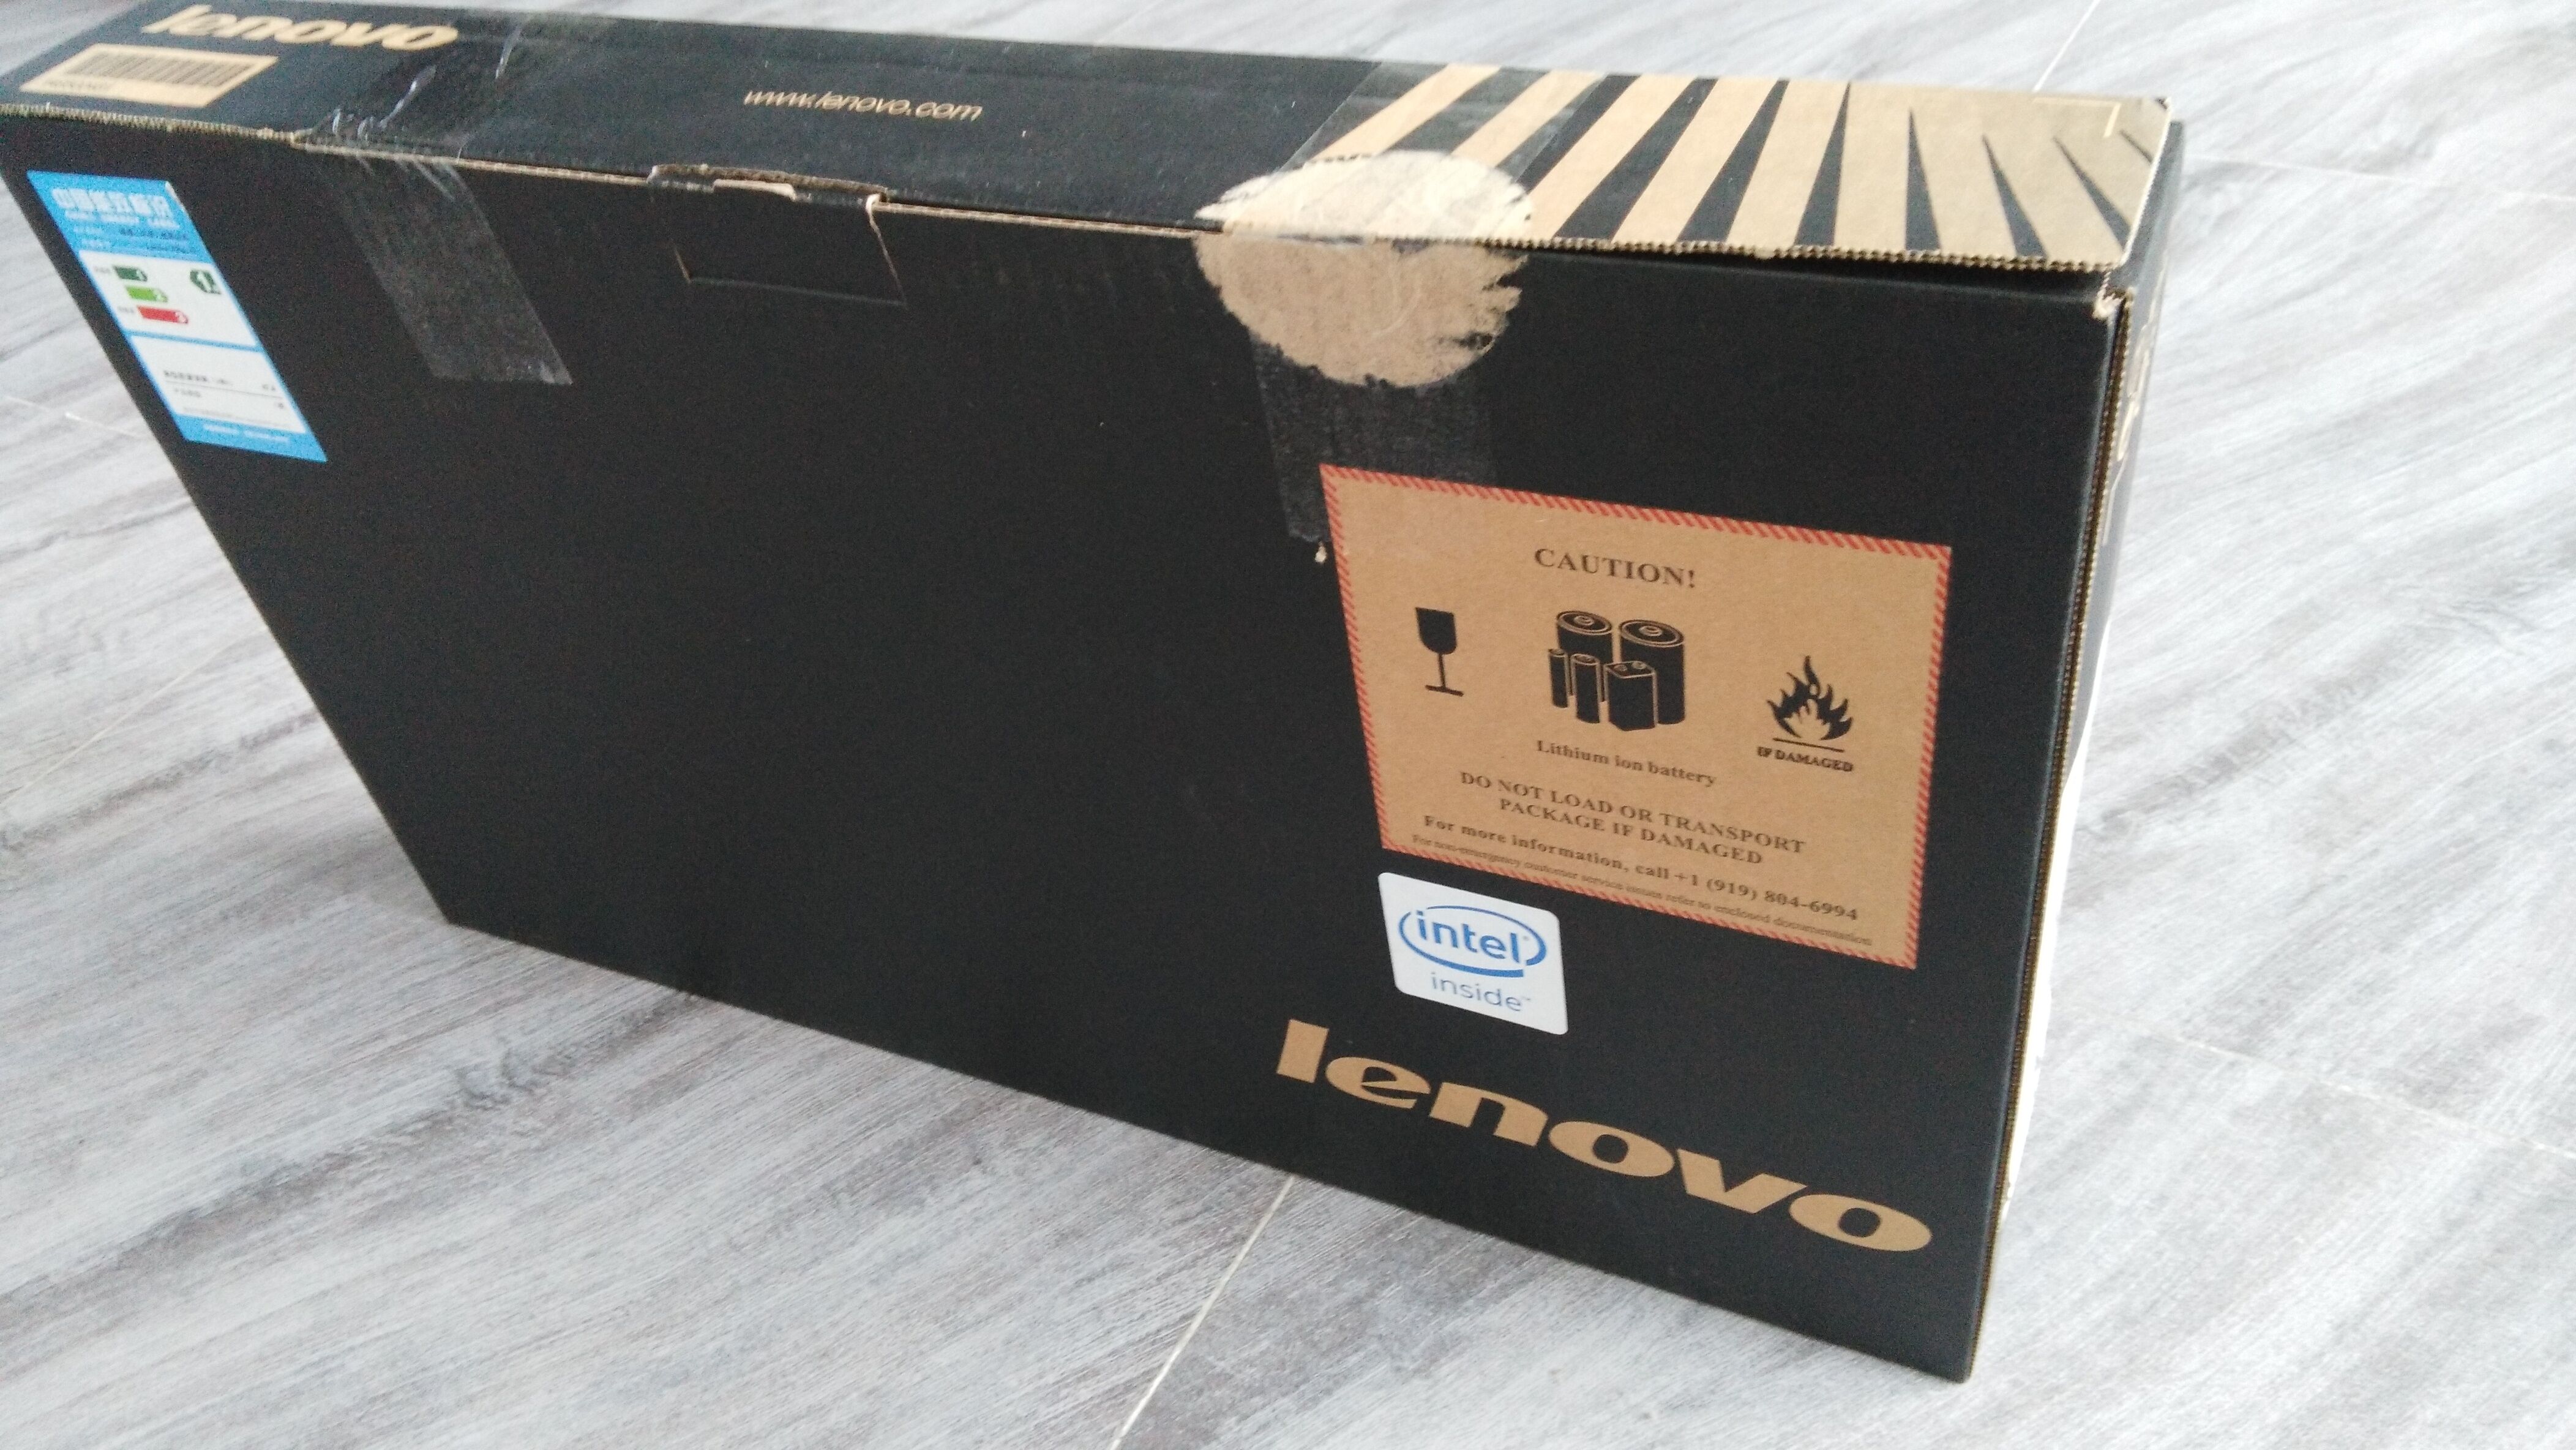 Lenovo IdeaPad Y50-70 15.6" i7-4720HQ 2.6GHz 1TB 7200 8GB RAM